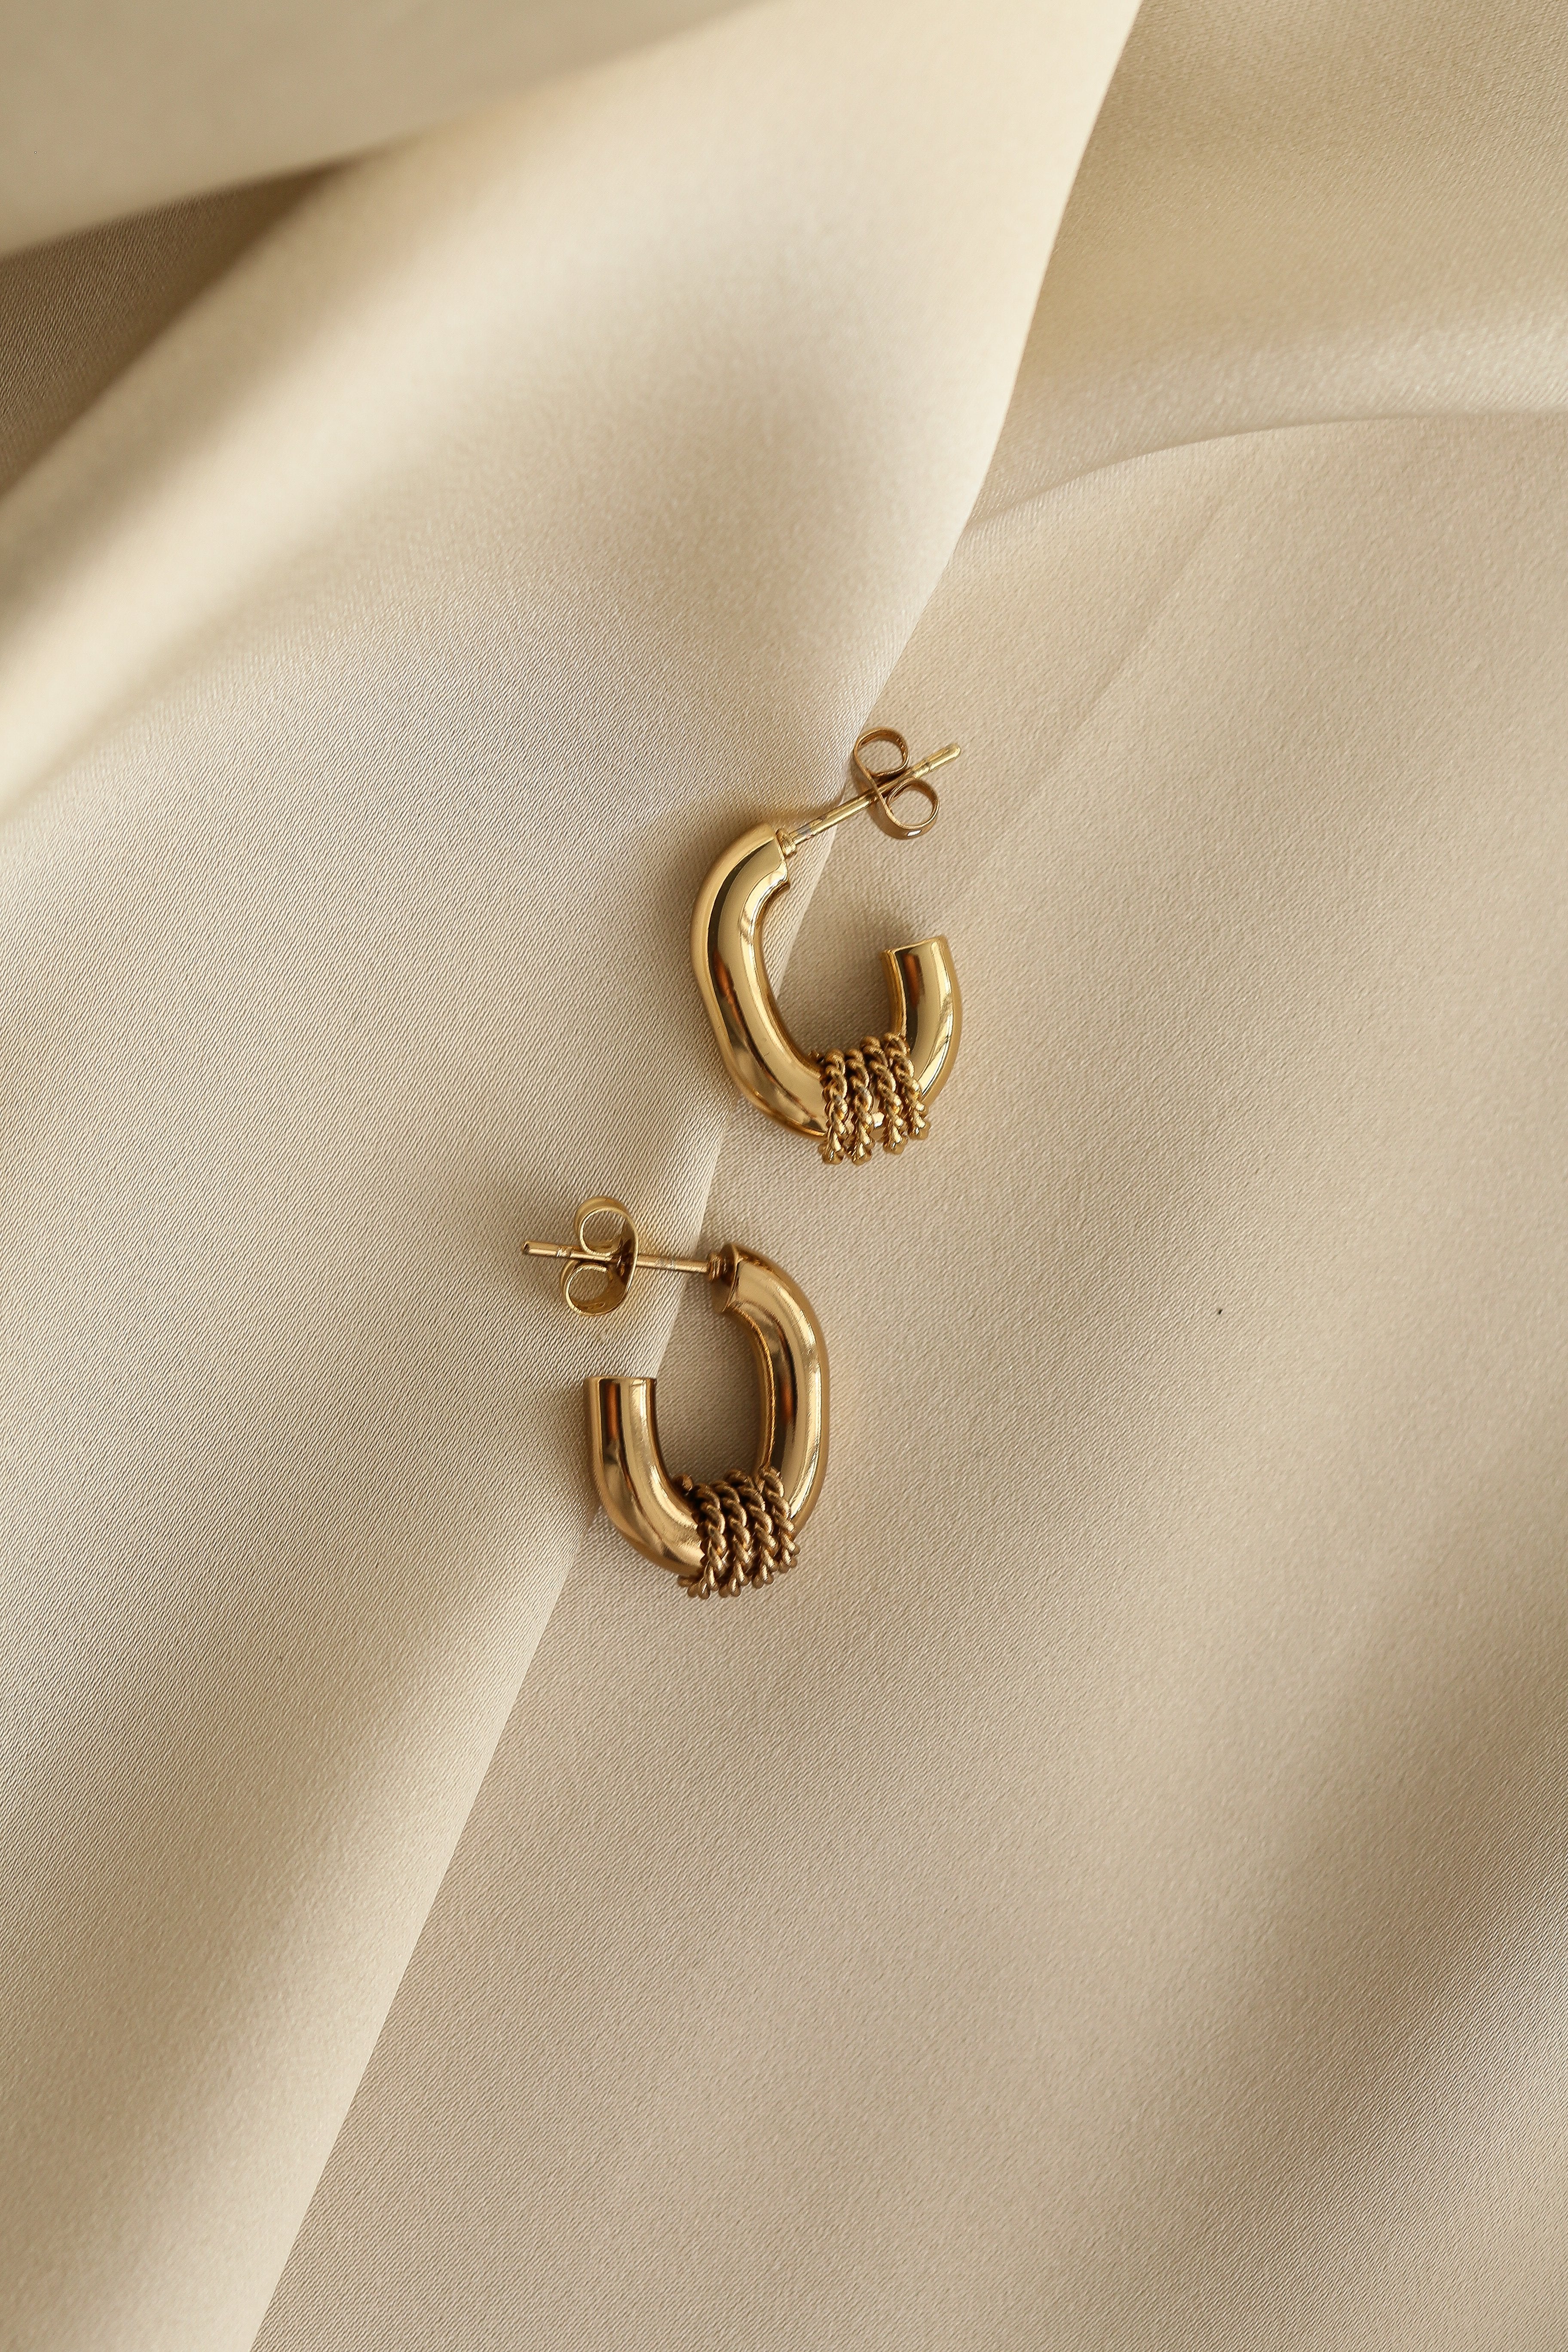 Heloise Hoop Earrings - Boutique Minimaliste has waterproof, durable, elegant and vintage inspired jewelry